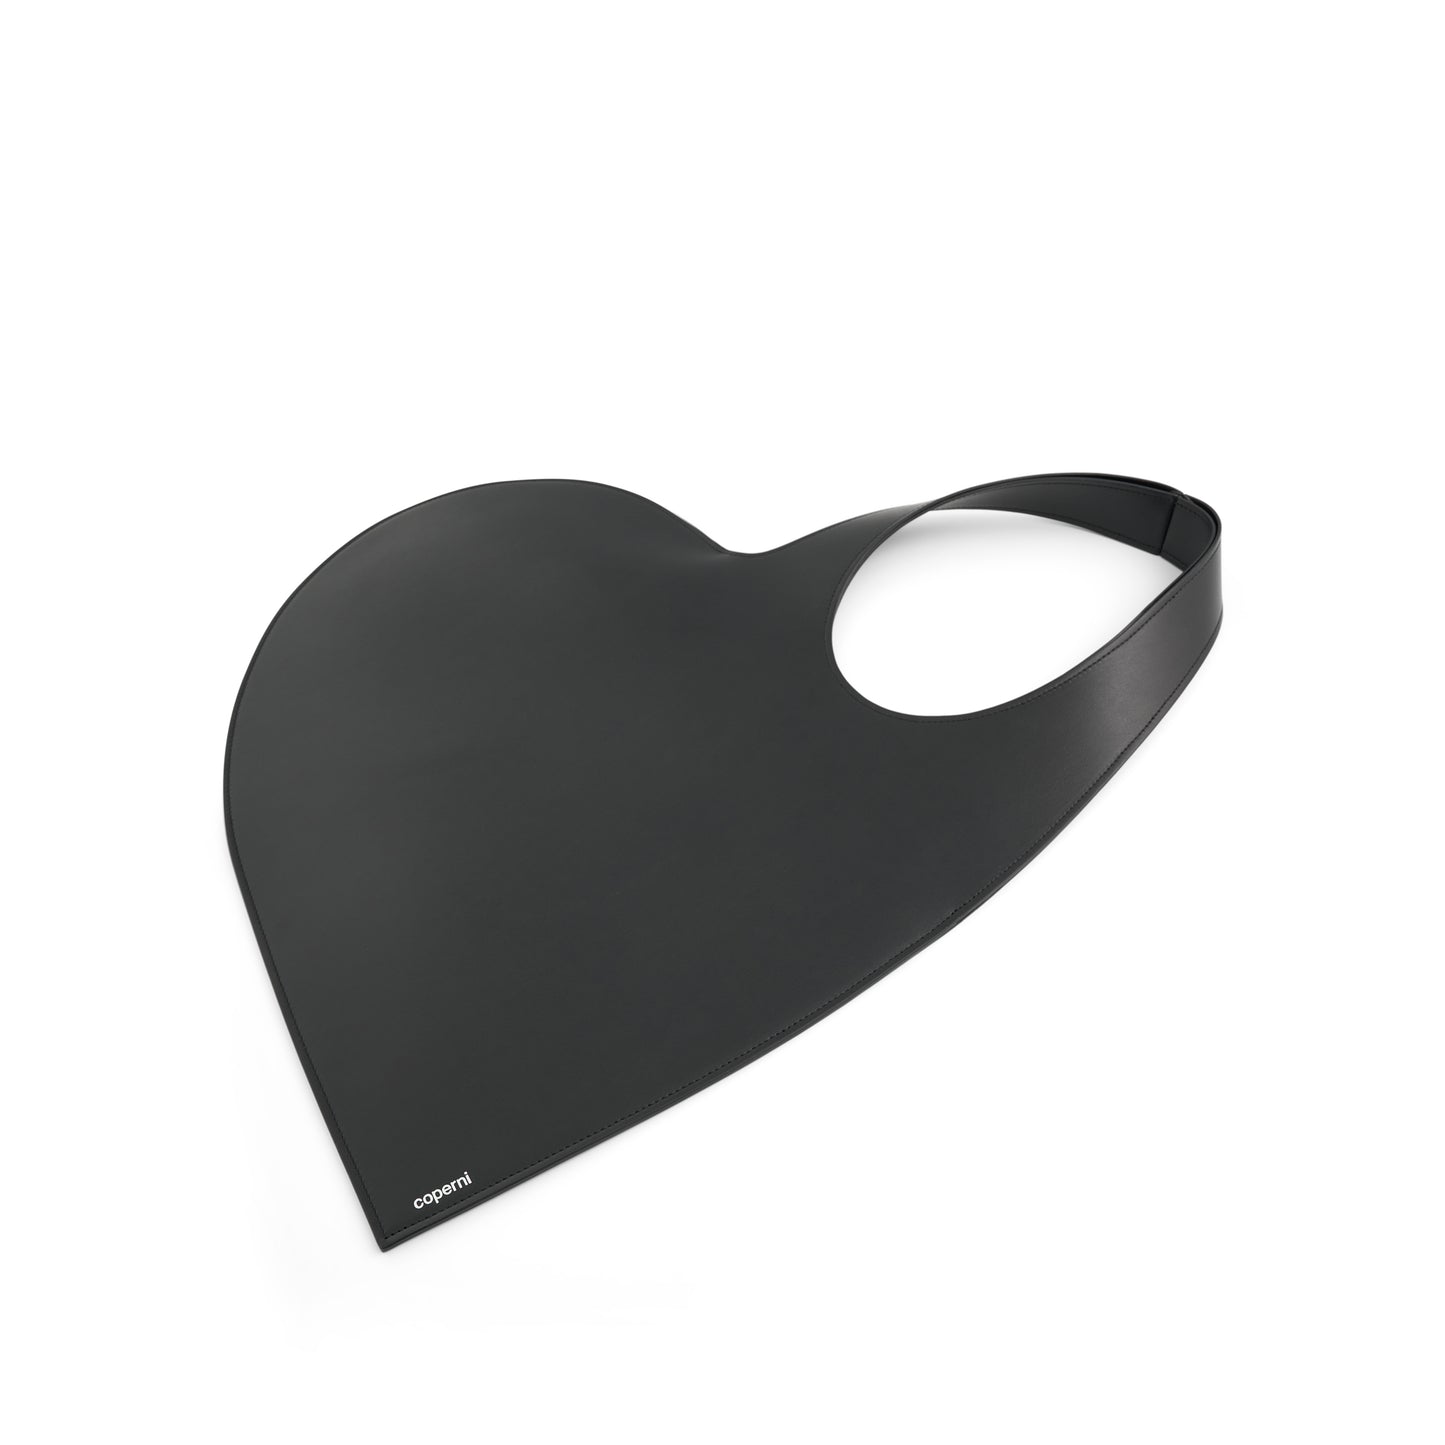 Heart Tote Bag in Black